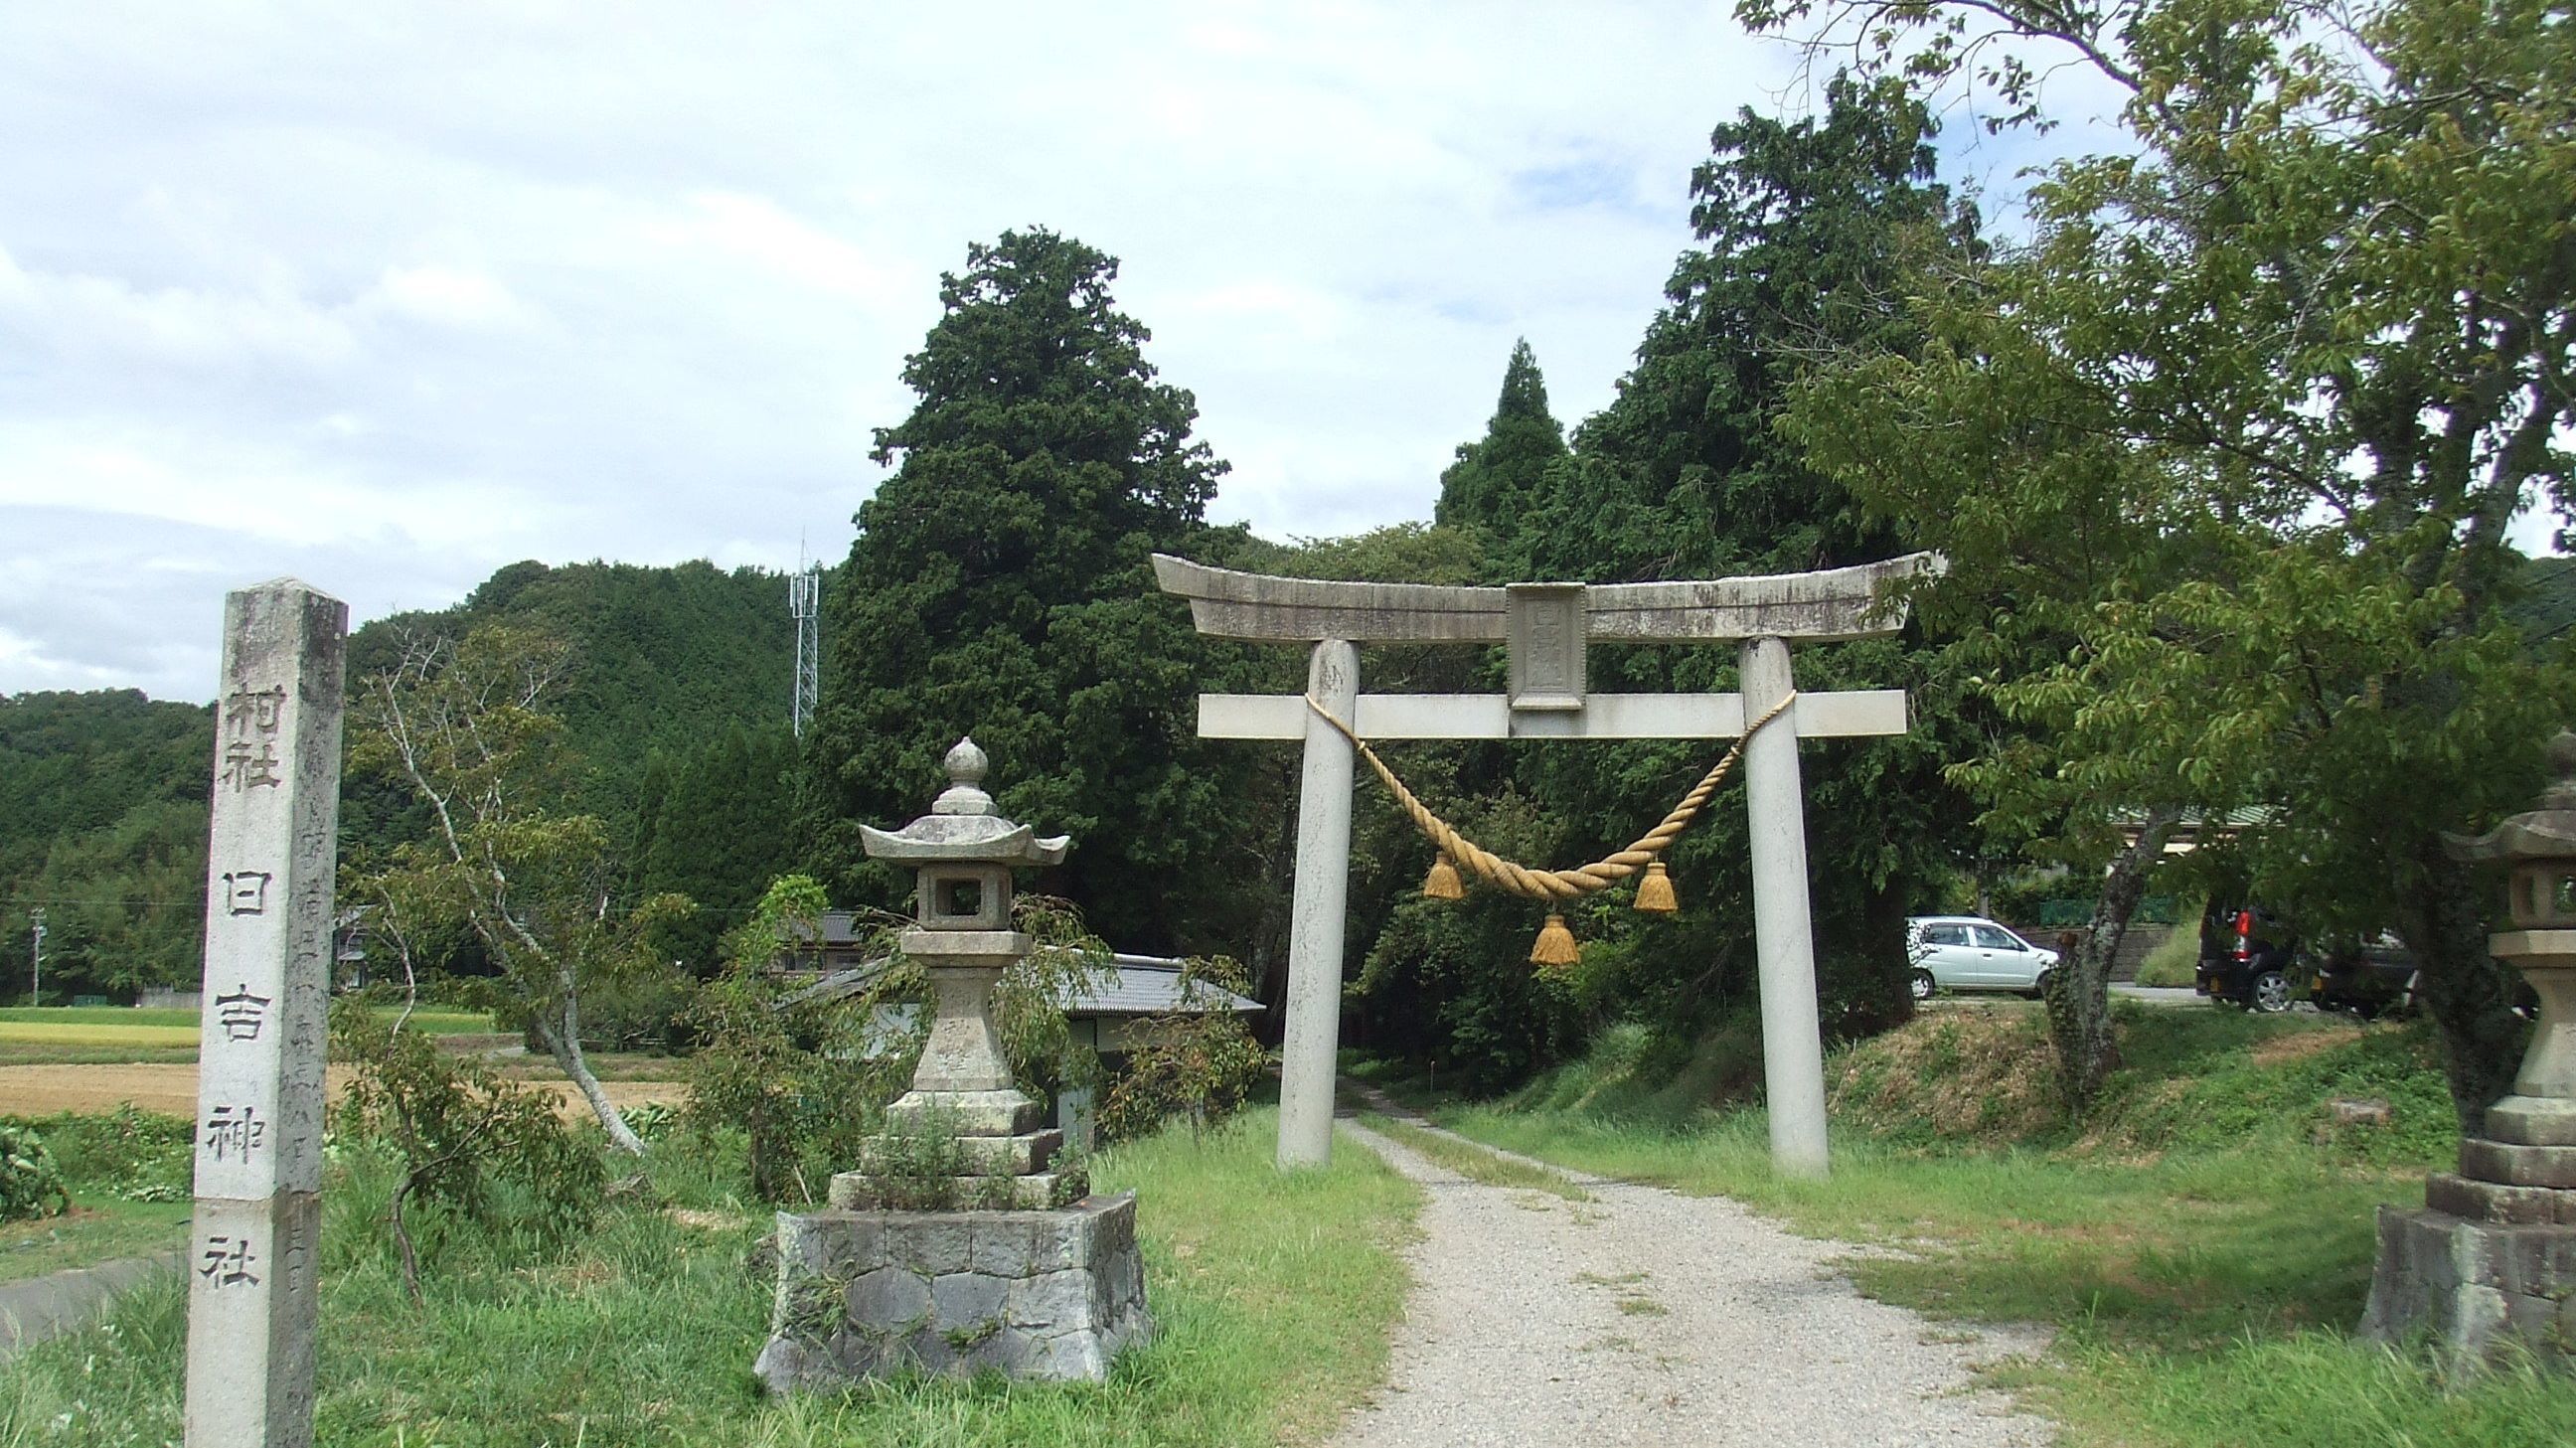 上地八幡宮の近隣の神社の桑谷日吉神社